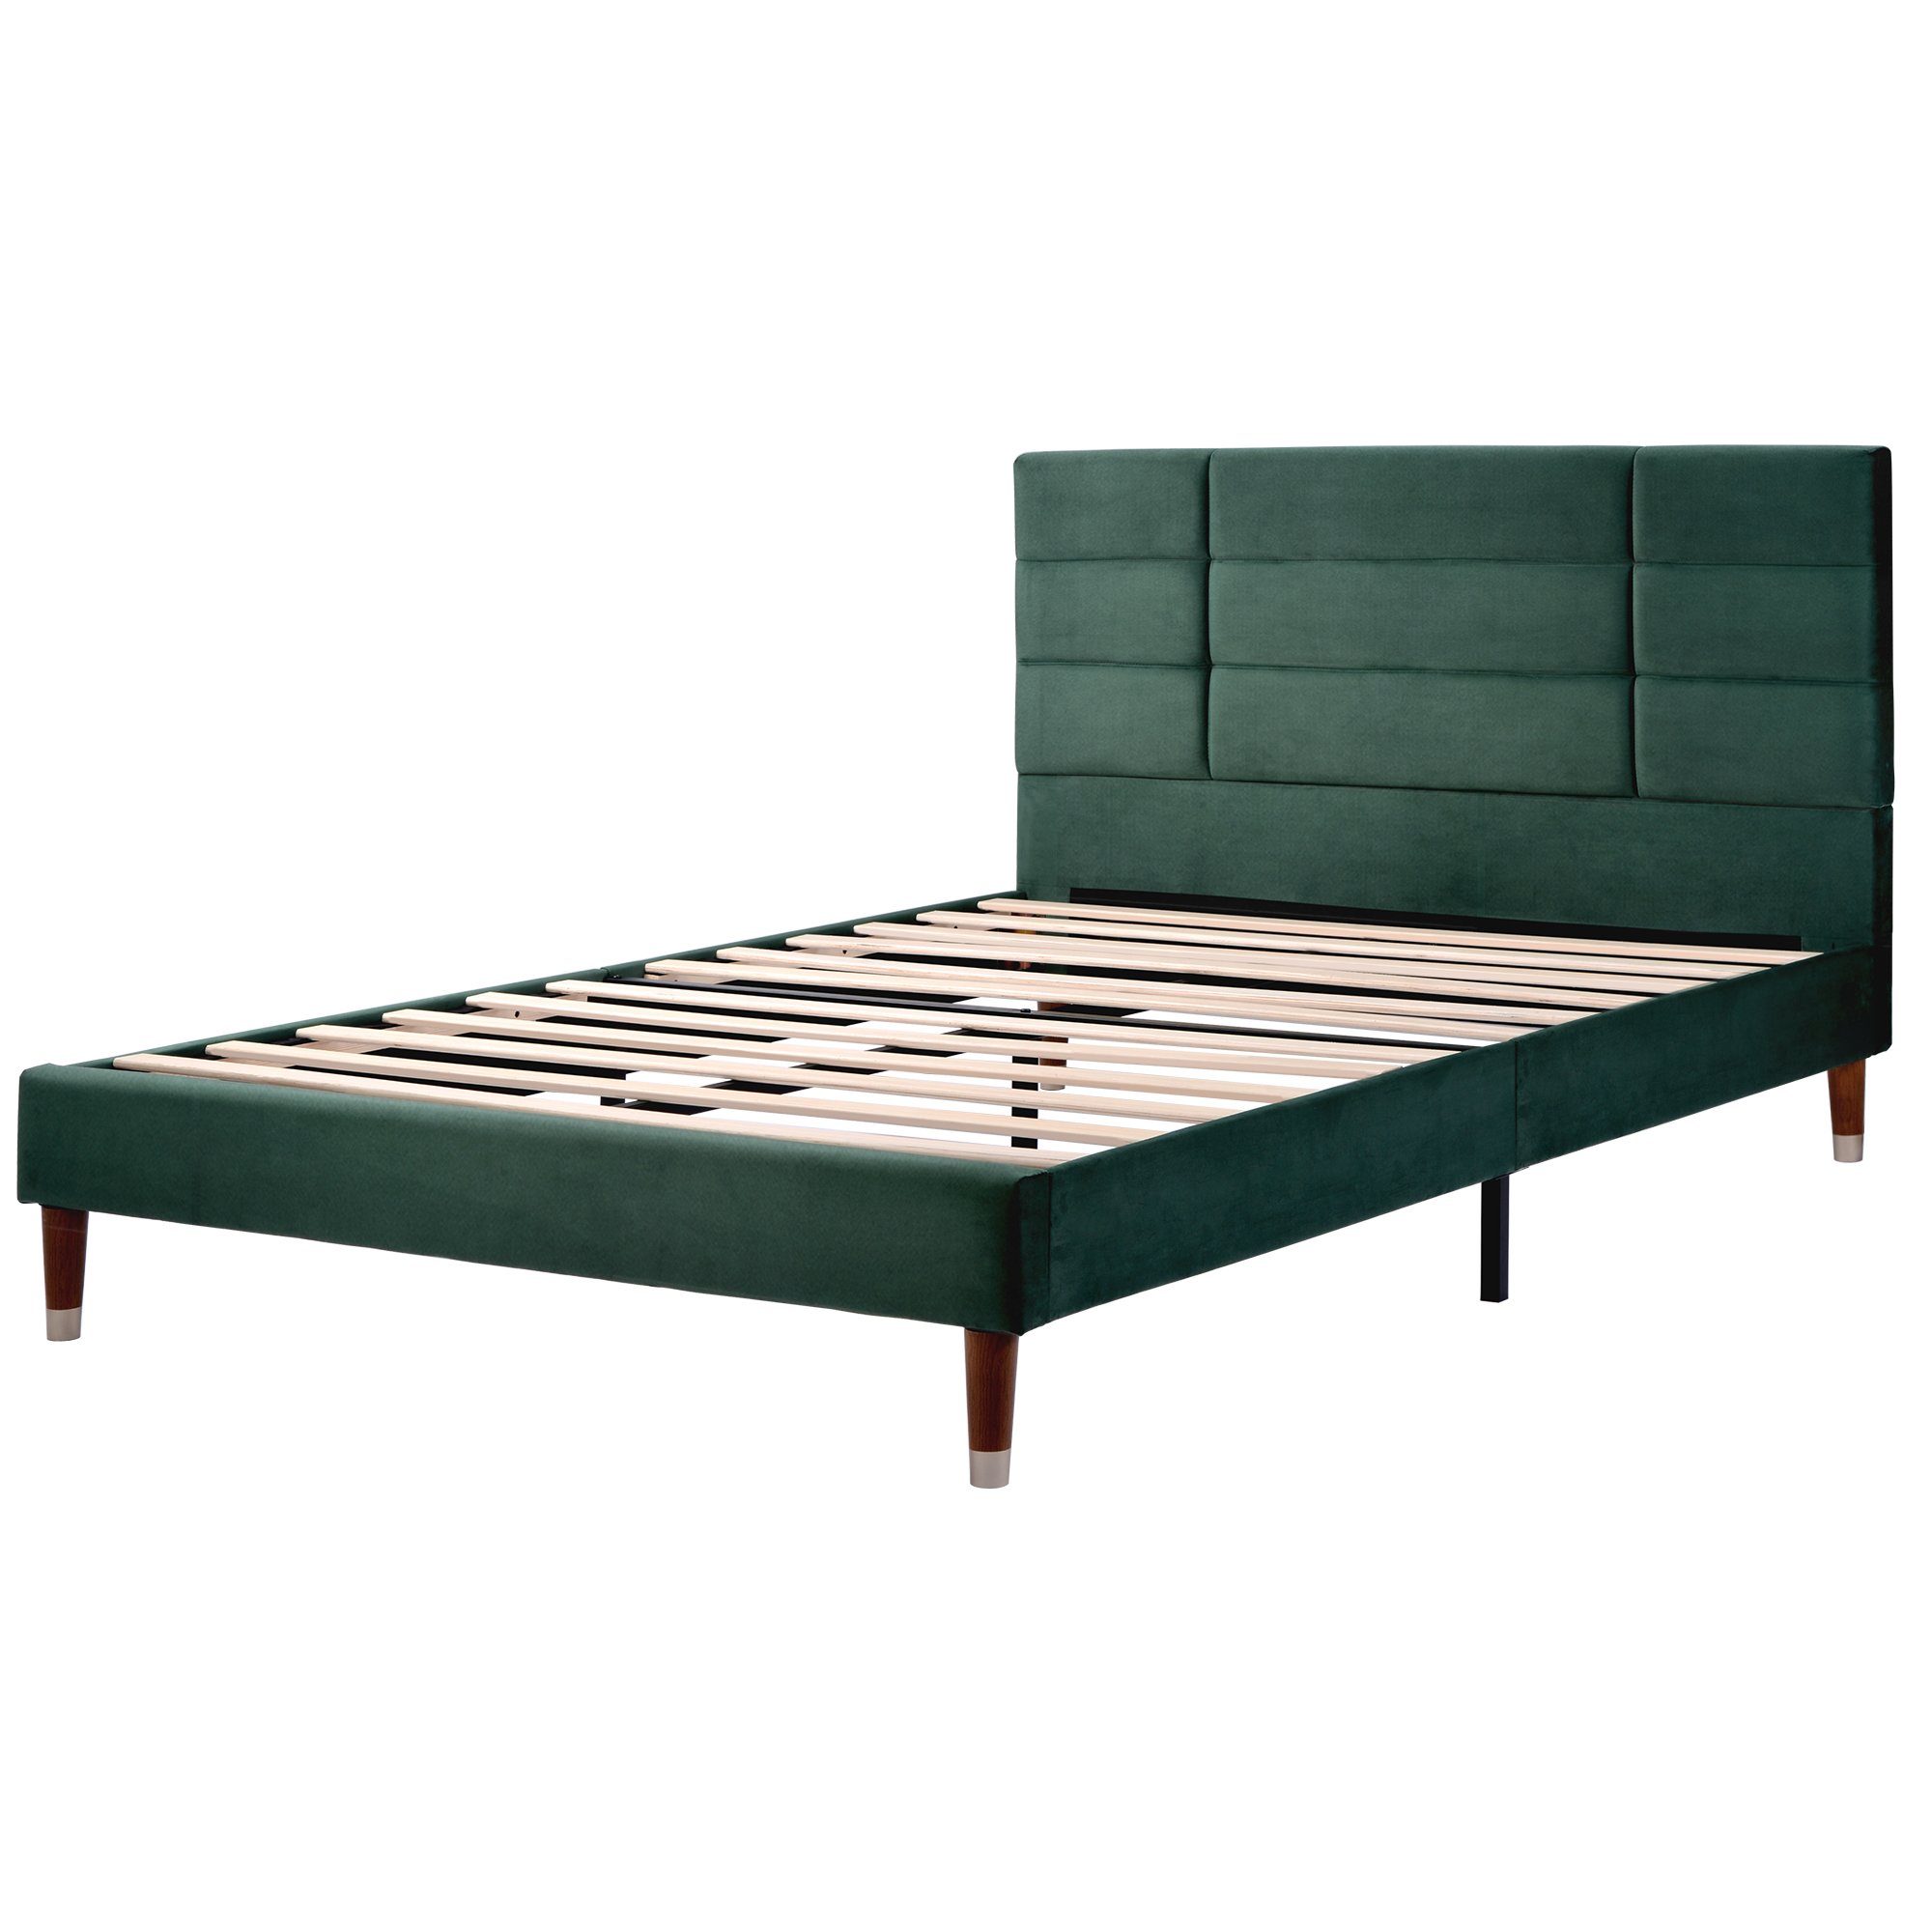 Massivholzbett oder Funktionsbett Matratze) Holzbett 140x200cm Polsterbett Grün REDOM Bett ohne Doppelbett (mit Matratze